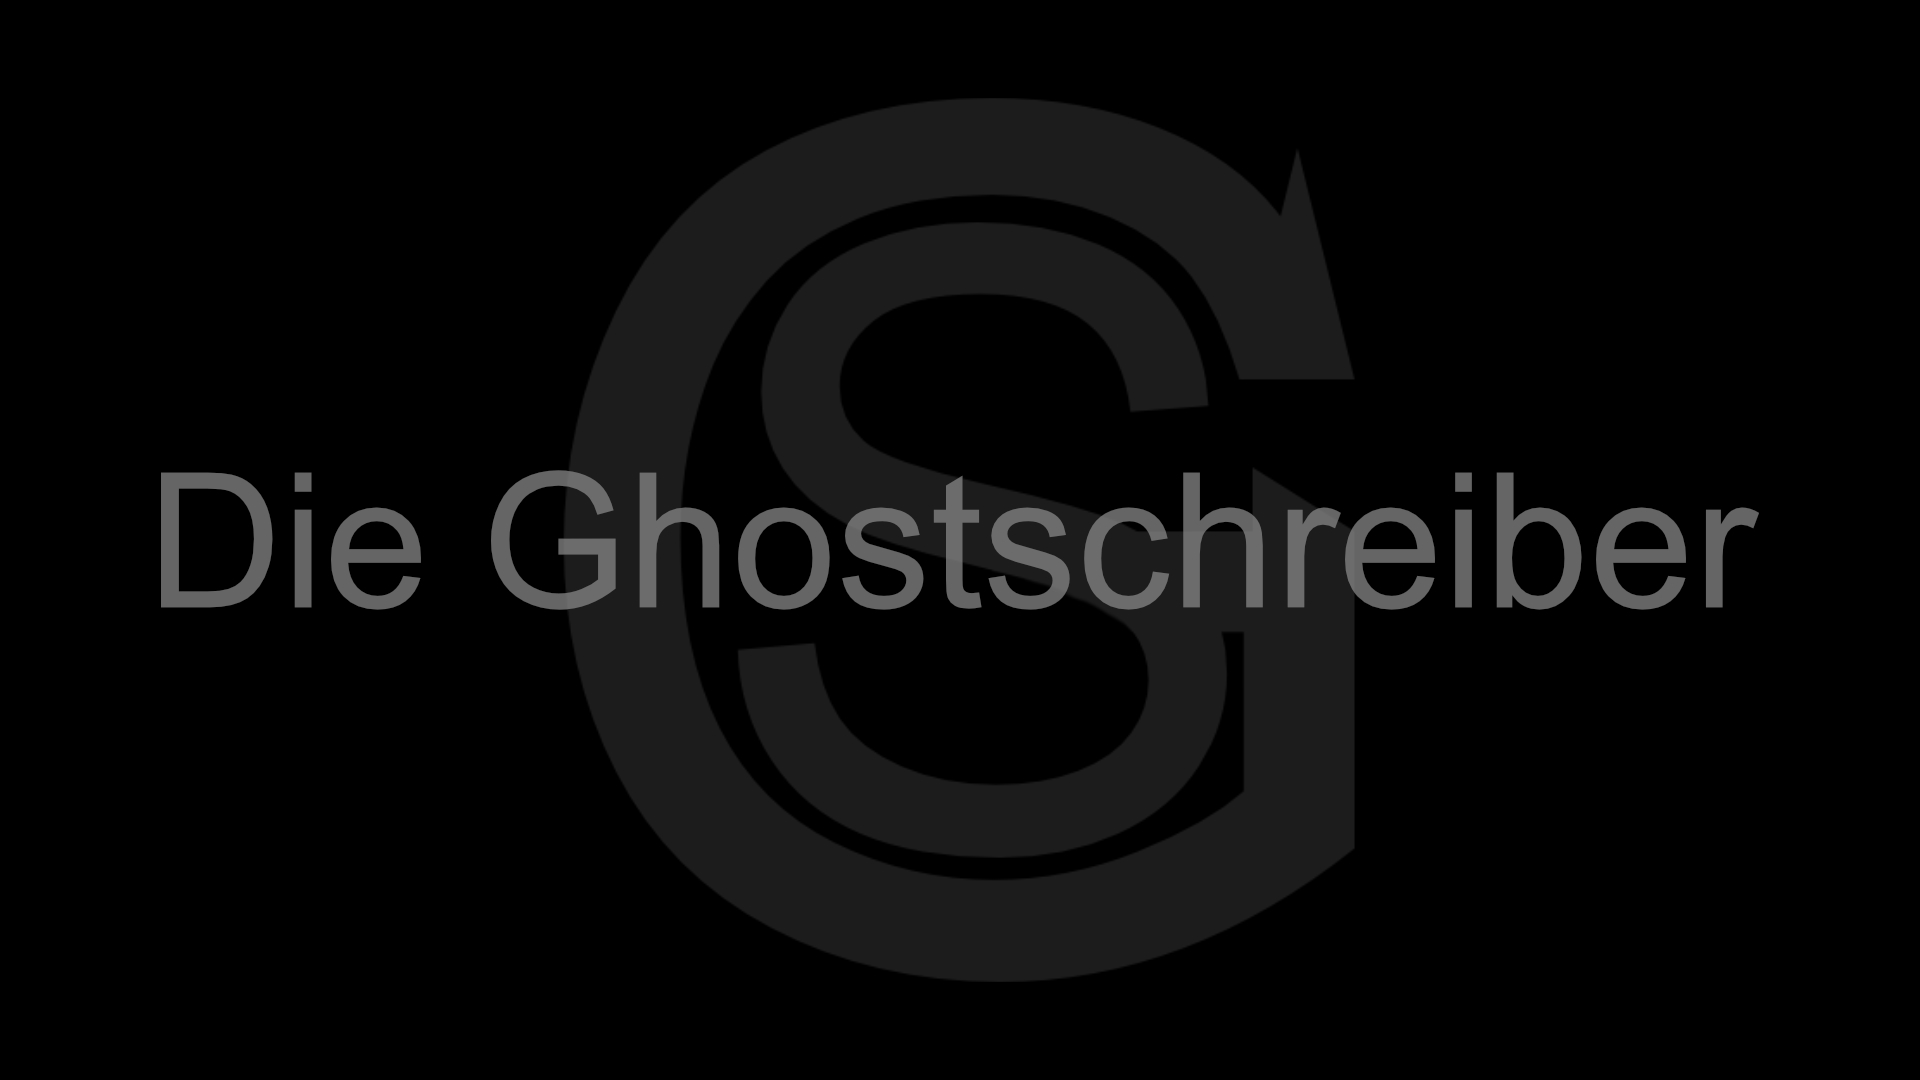 Ghostwriter Ghostschreiber Ghostwriting Background